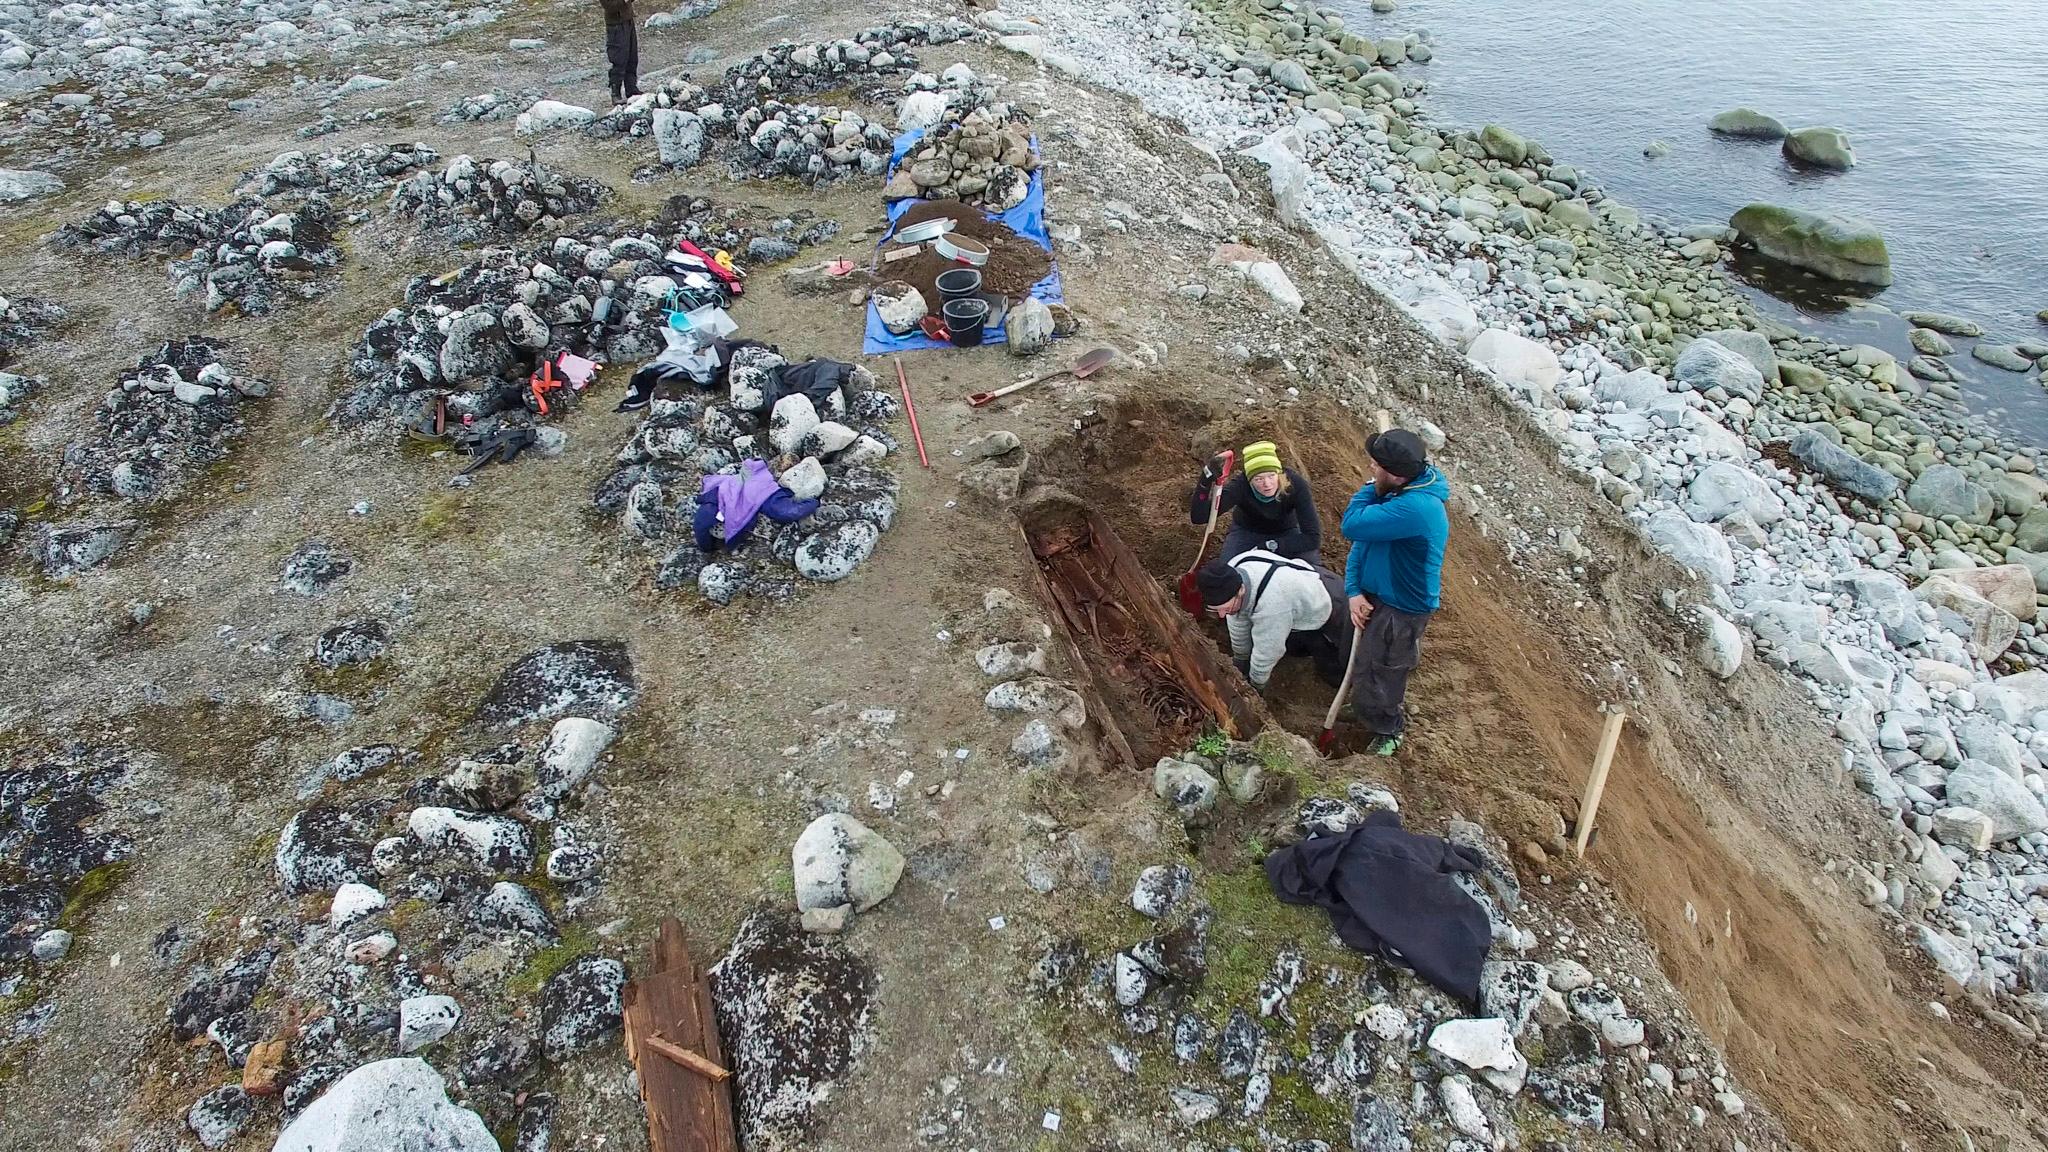  Sysselmannen skal i samarbeid med Svalbard museum gjennomføre flere arkeologisk nødutgravning av hvalfangergraver fra 1600- og 1700-tallet. Her fra en tidligere utgraving på Likneset ved Smeerenburgfjorden.